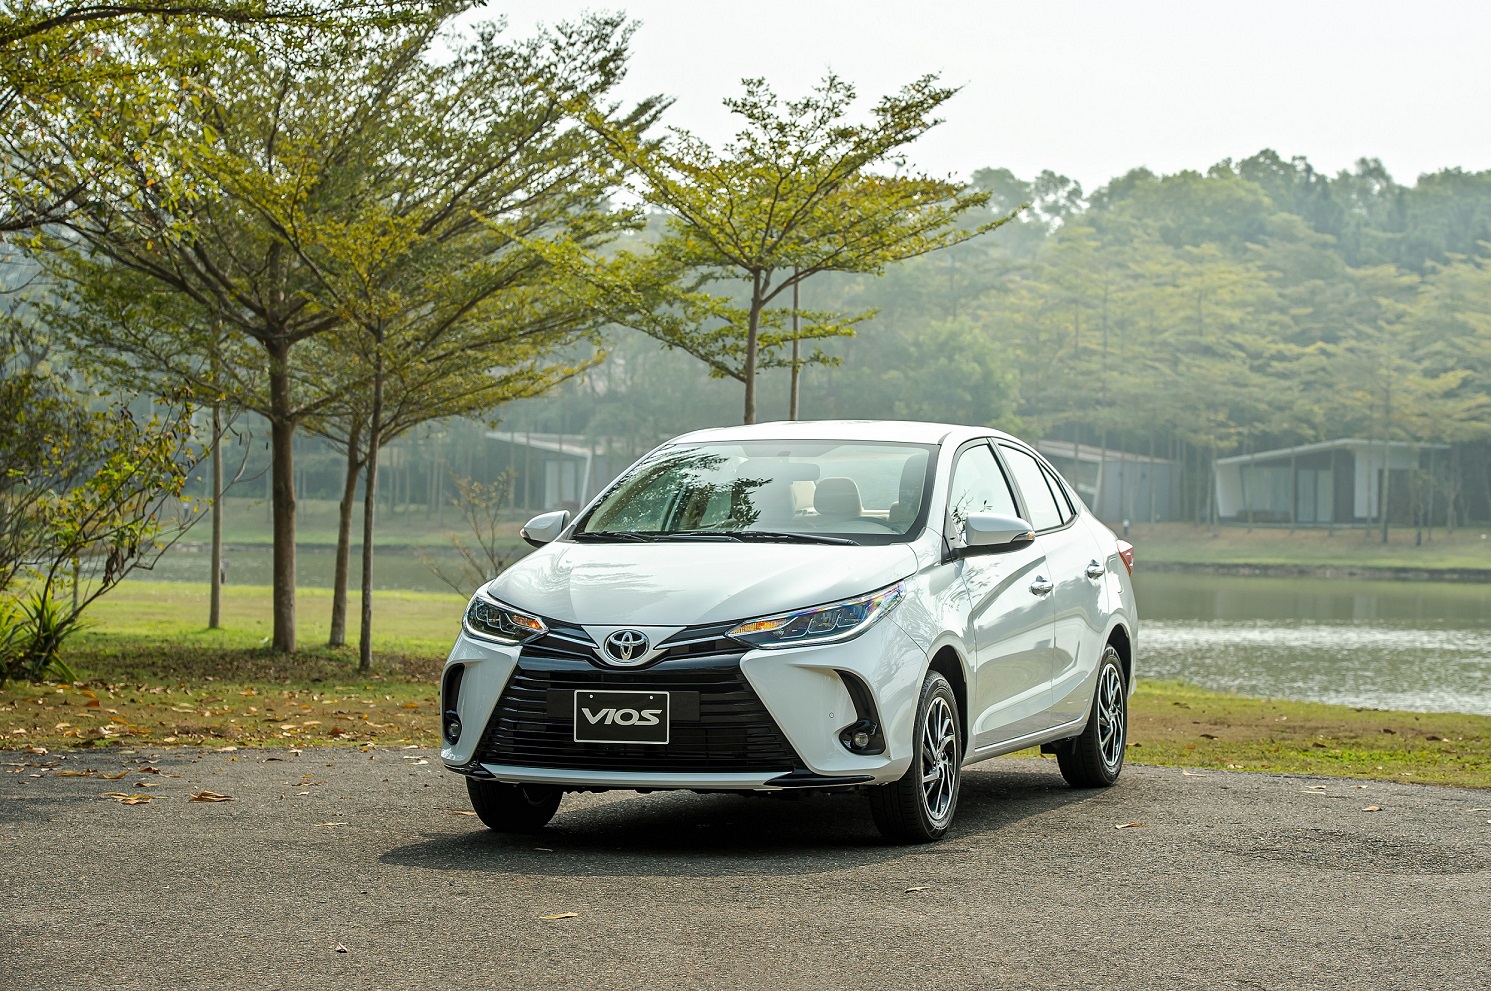 Triển lãm giới thiệu Toyota Vios phiên bản mới sắp diễn ra tại TP.HCM toyota-vios-white-4.jpg